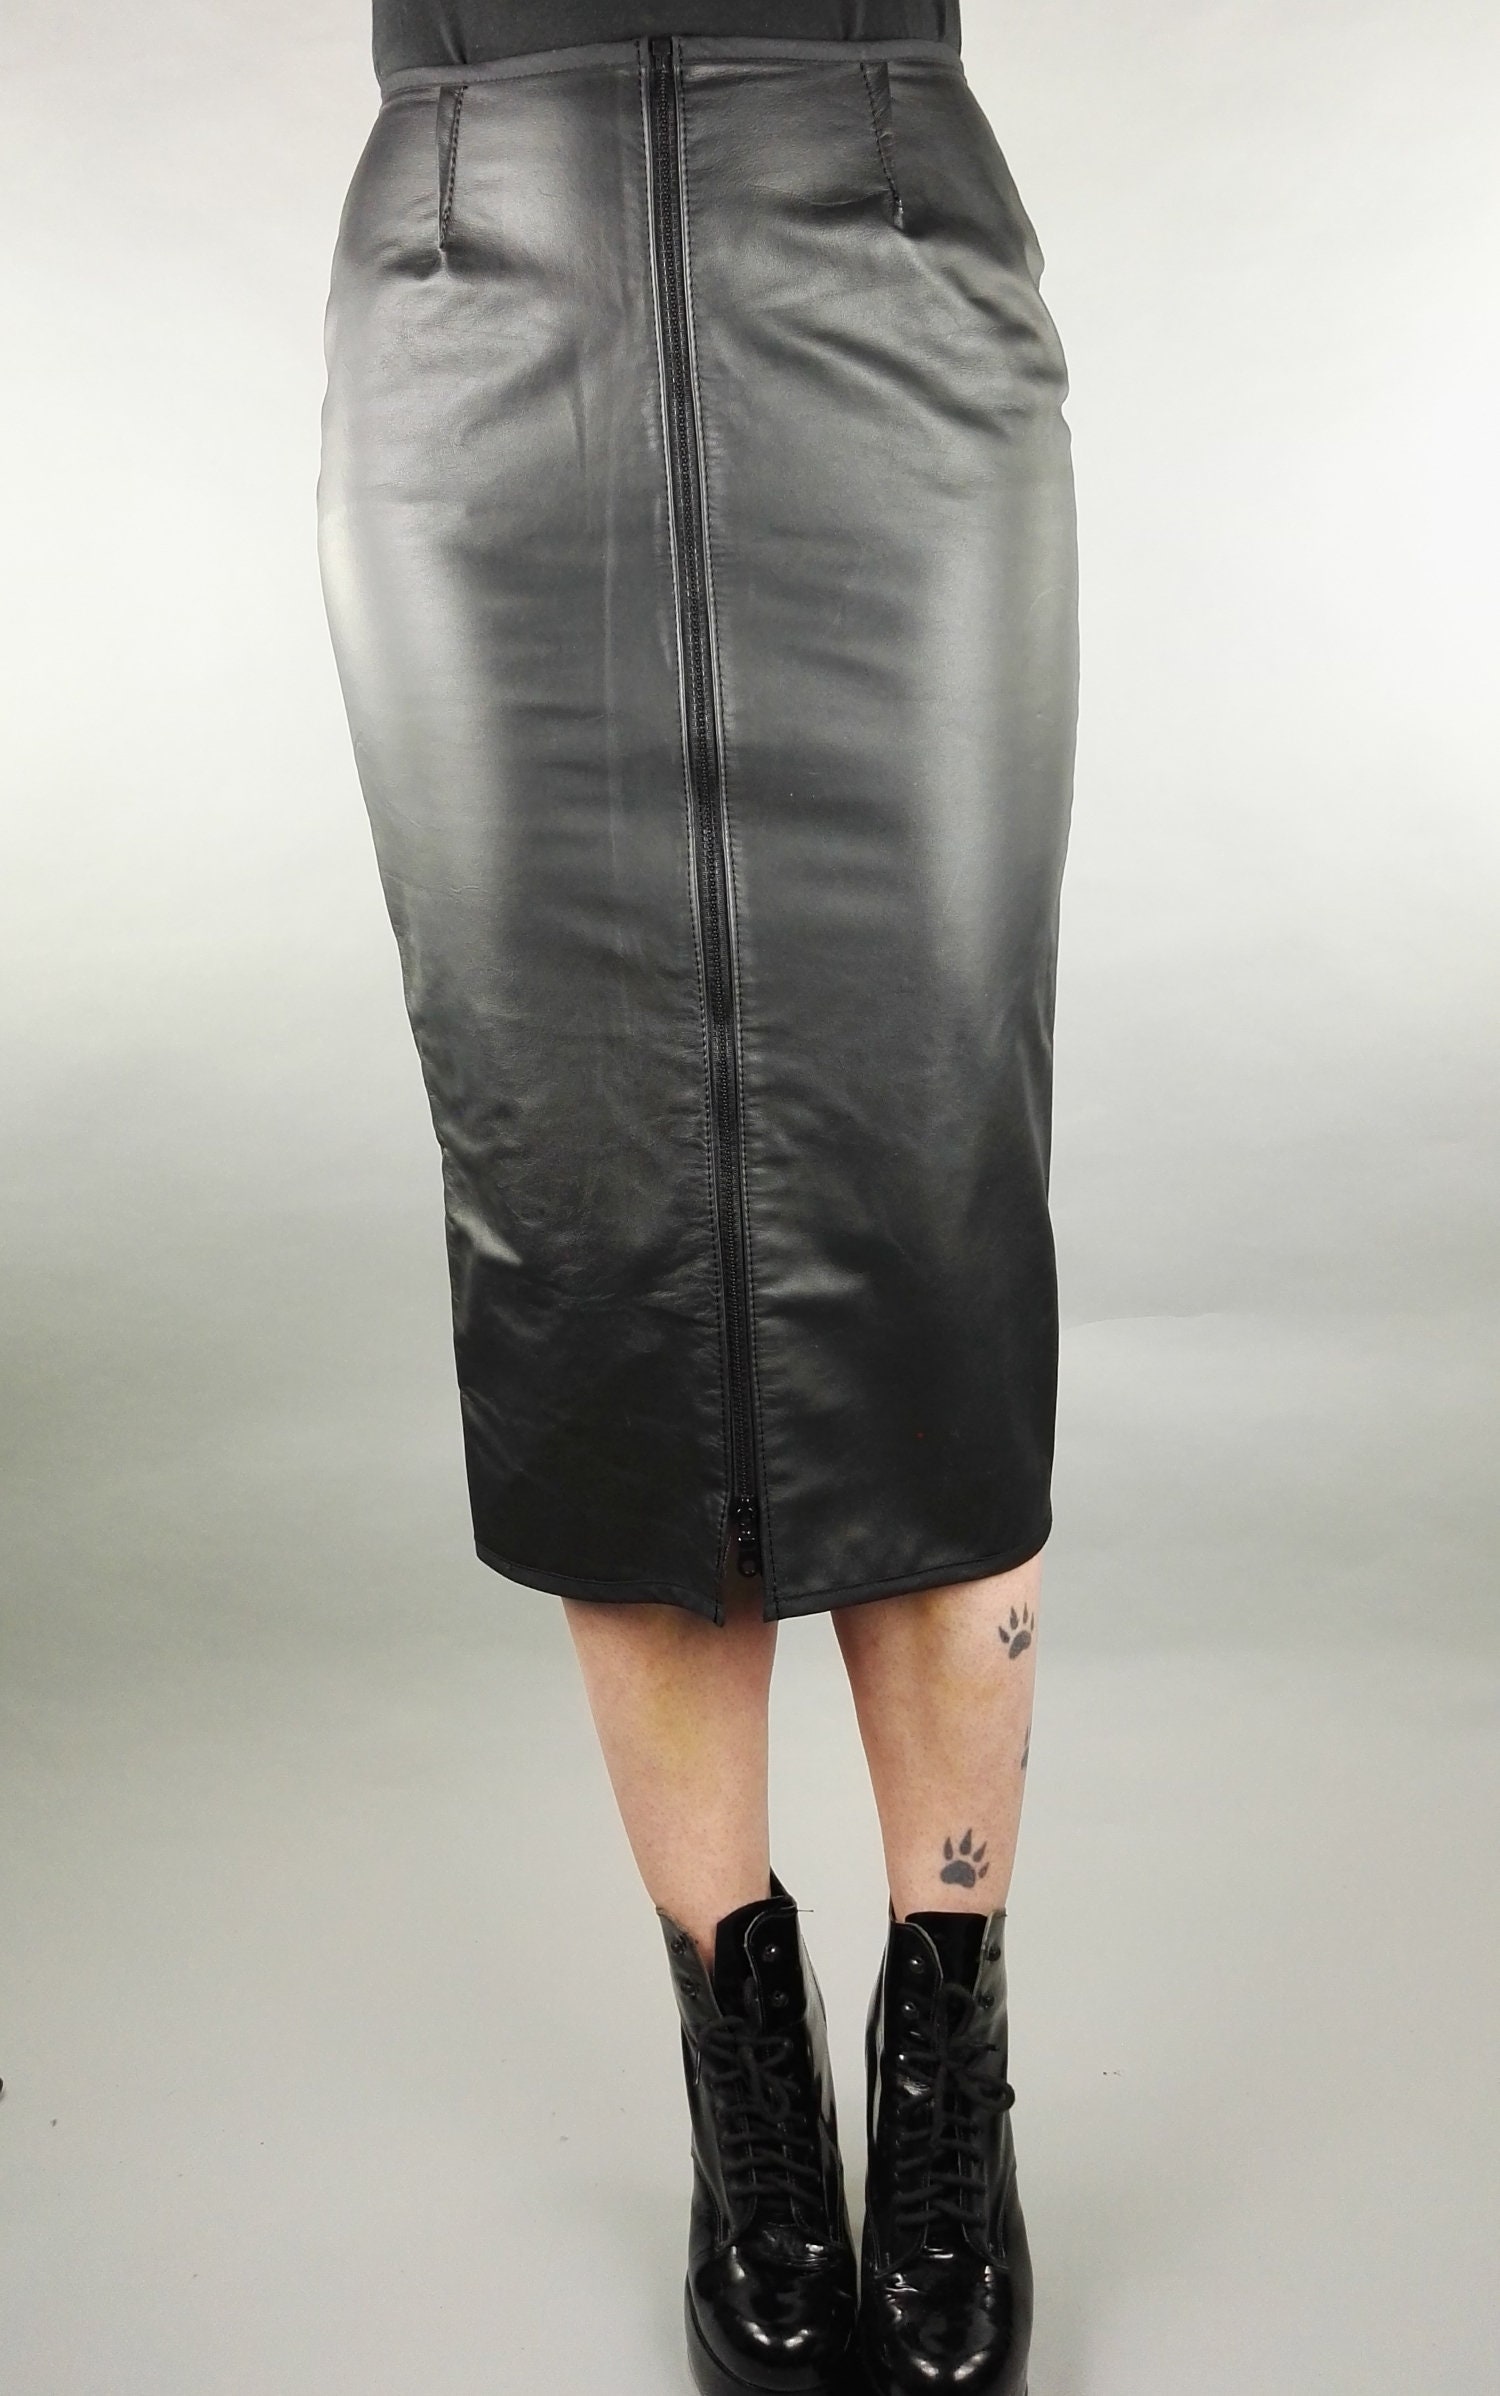 Spanking Hobble Skirt in Black Leather | Etsy UK